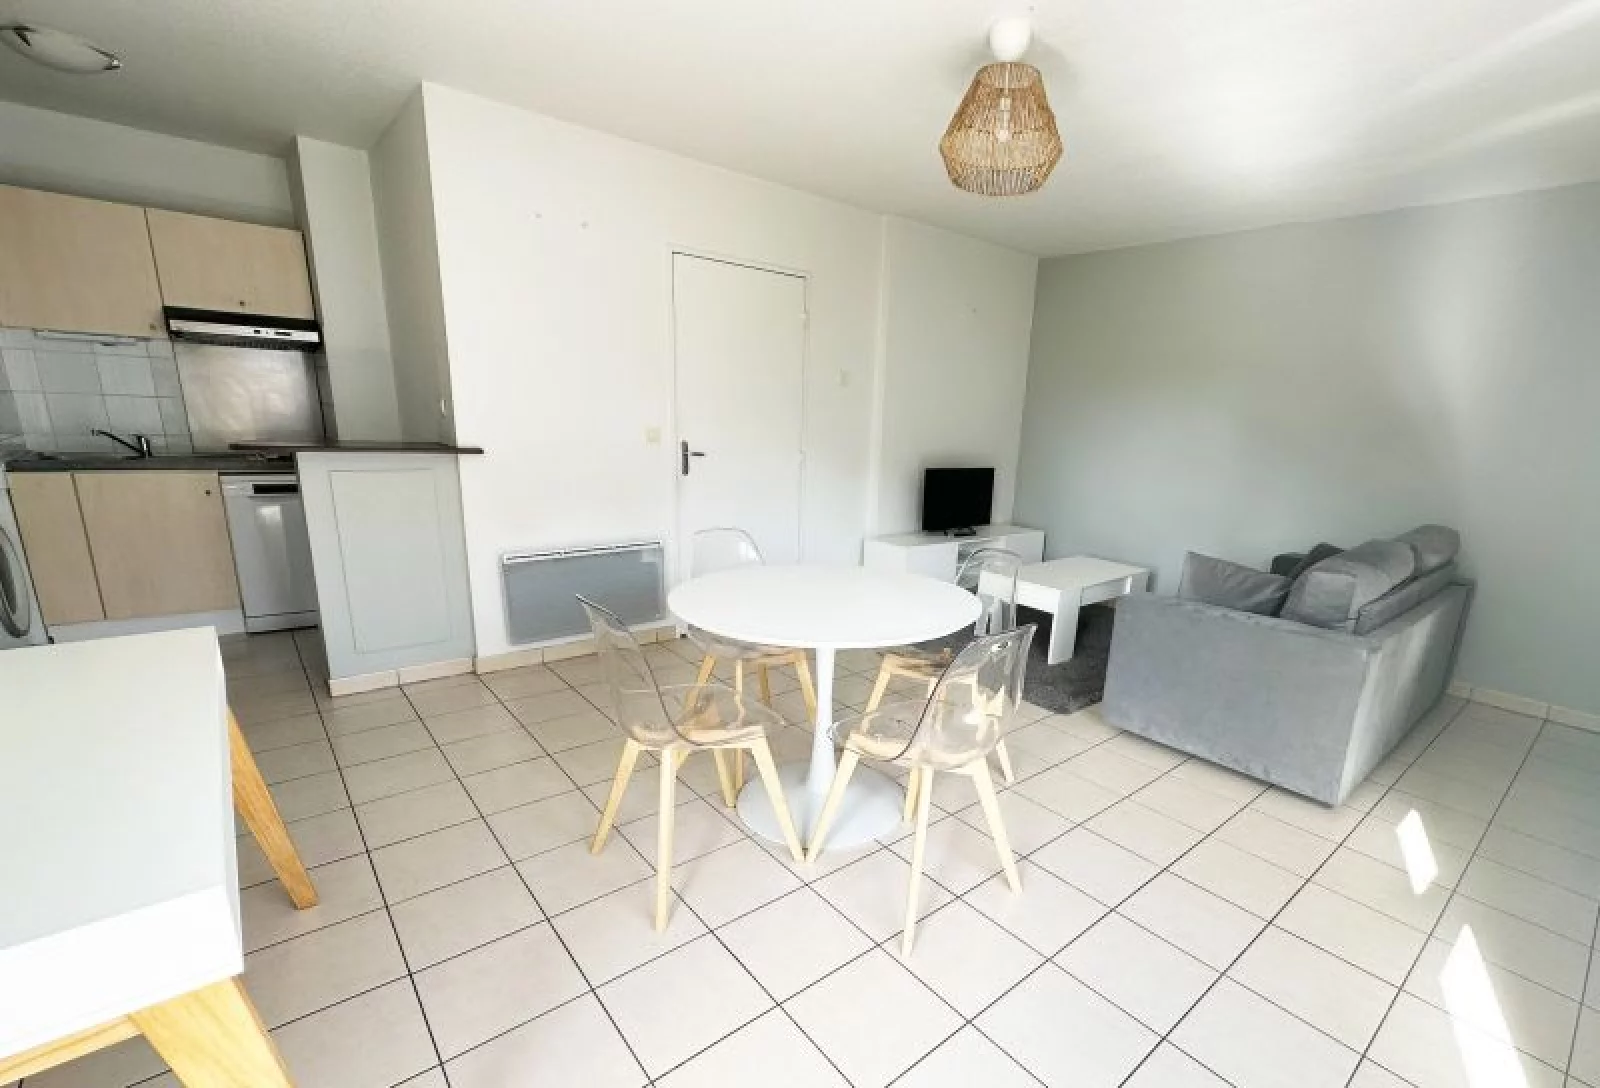 Location appartement meublé 2 pièces 44 m² (Paris est - Bry sur Marne)